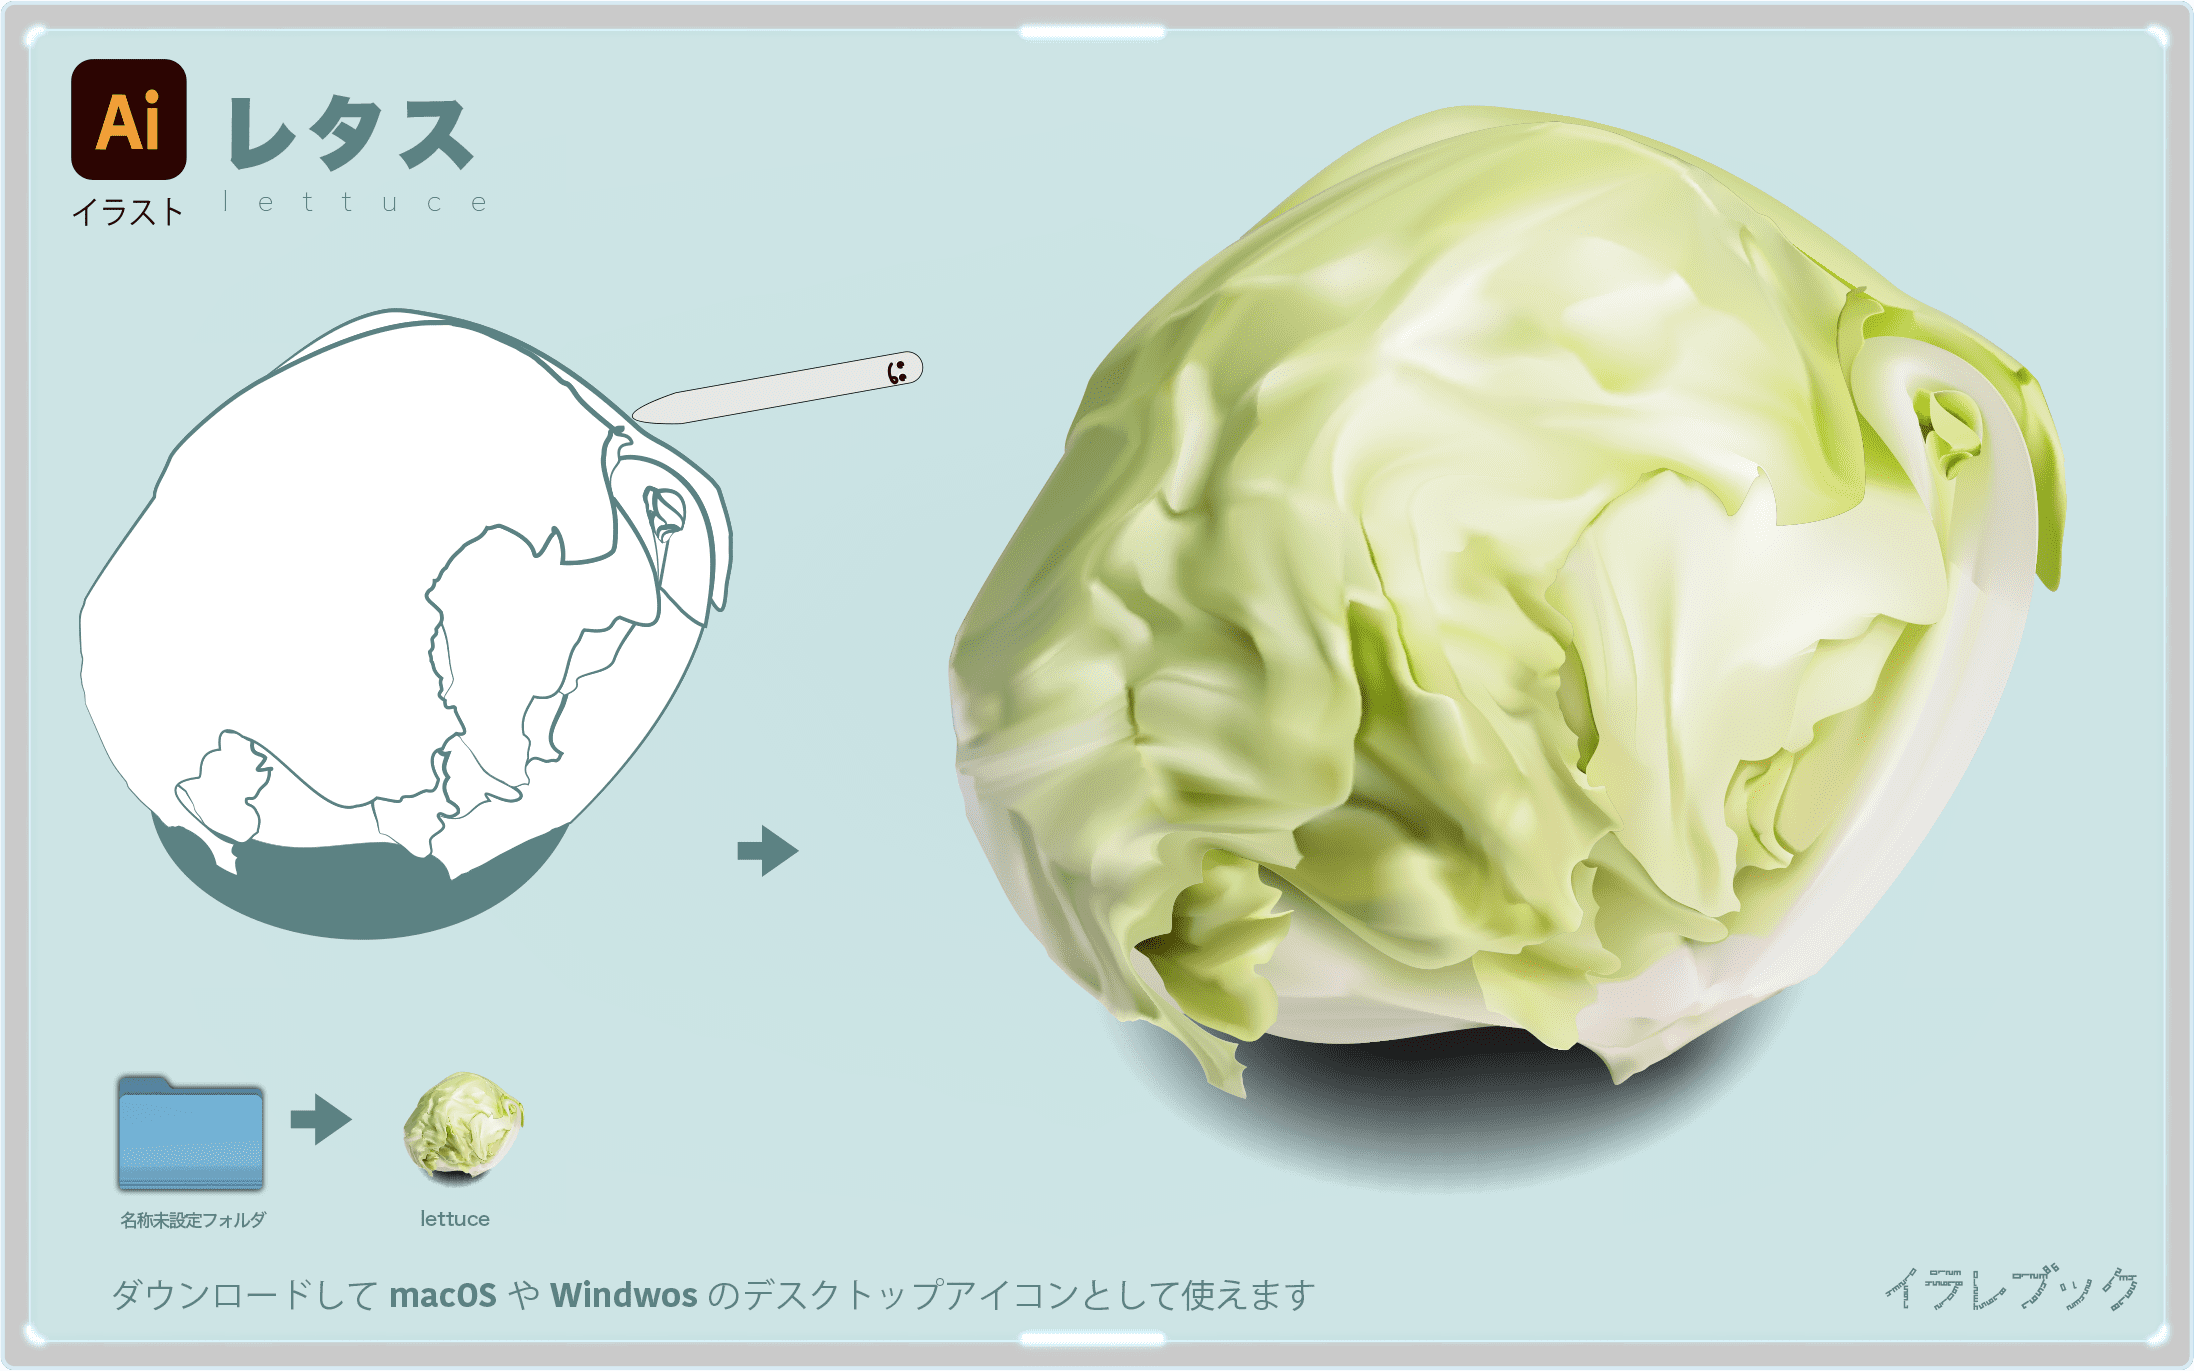 レタスの栄養とフリルレタス品種一覧も レタスチャーハンレタスクラブ Lettuce